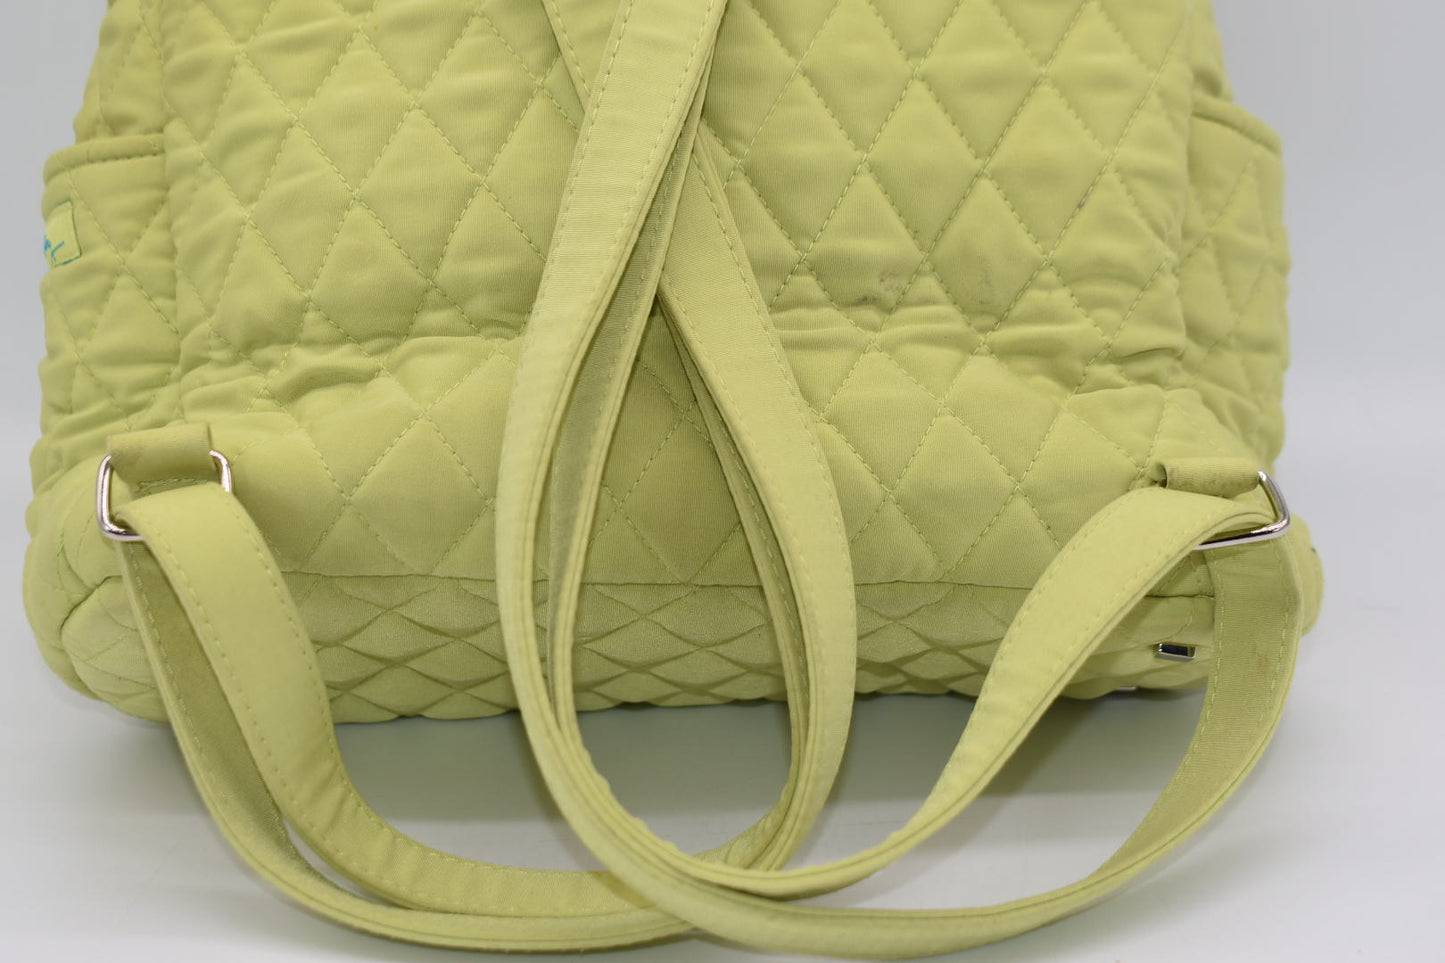 Vera Bradley Microfiber Backpack in "Key Lime" Pattern